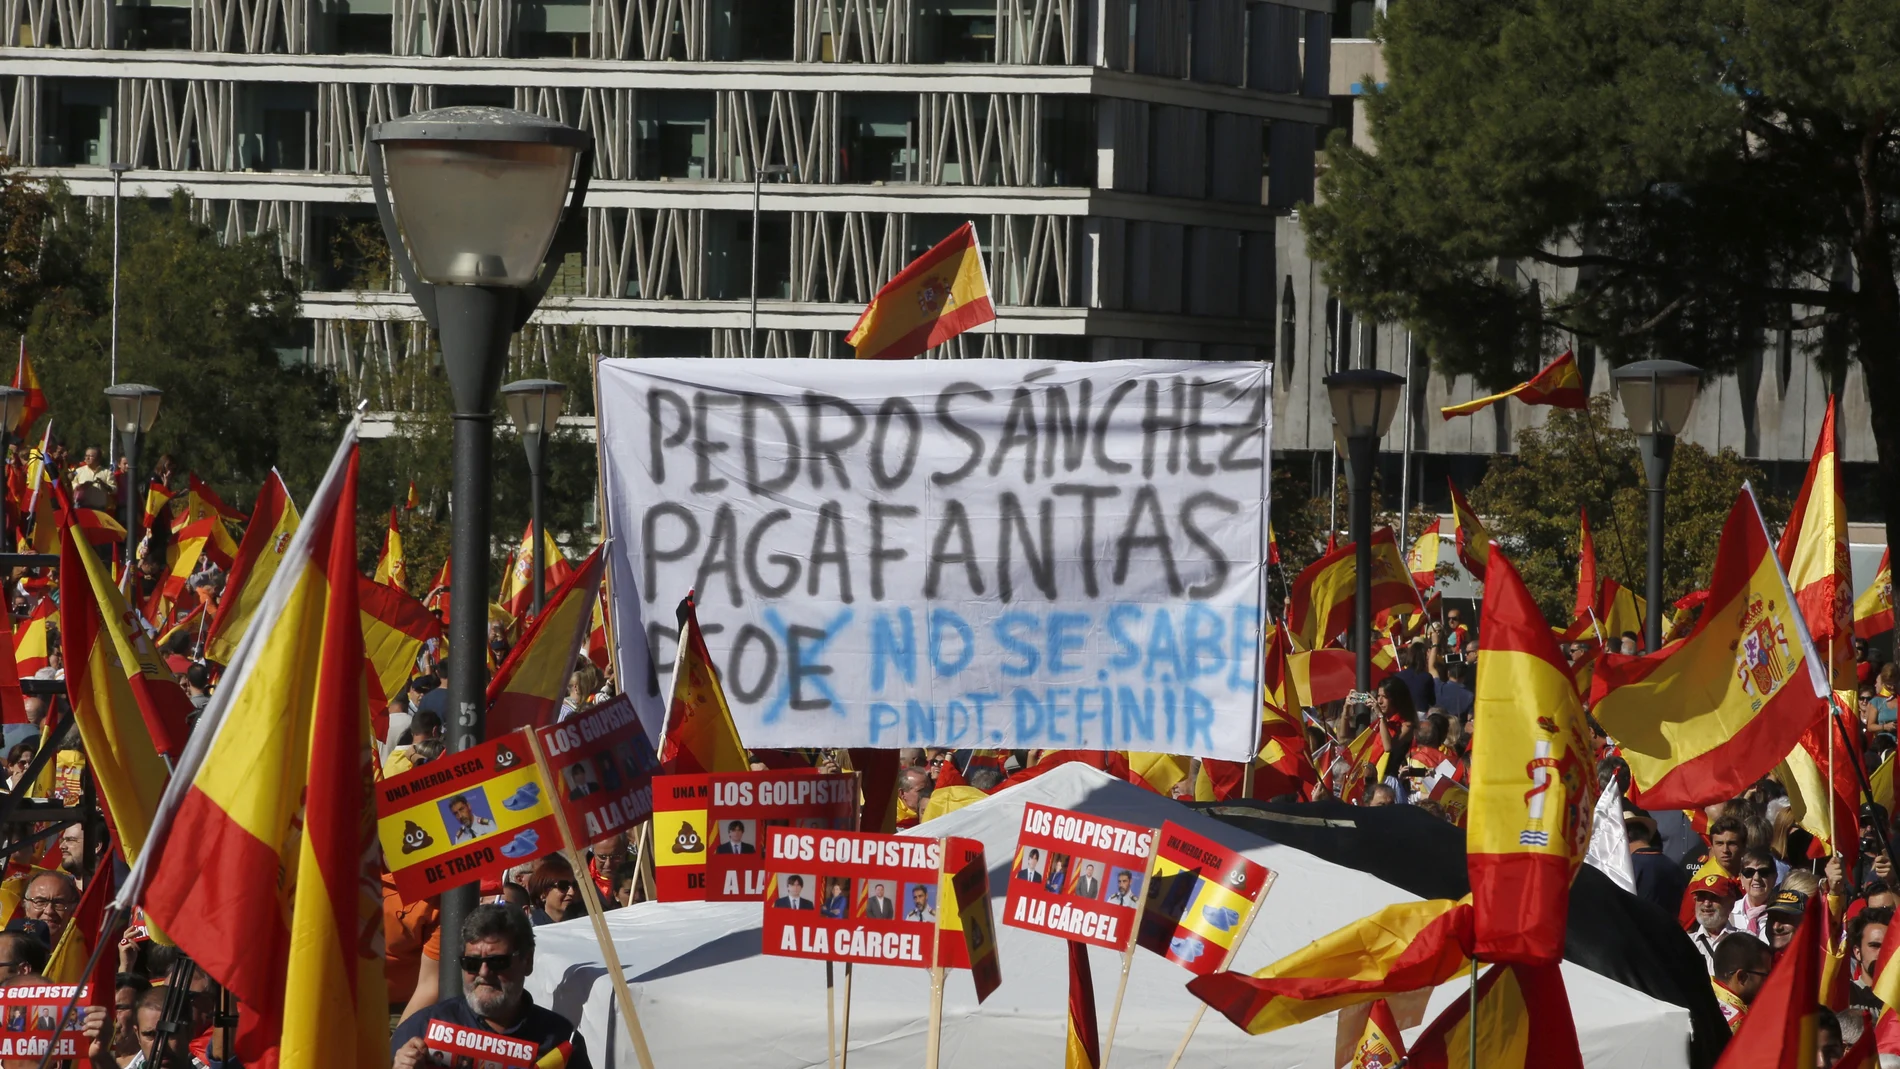 Concentración en la plaza de Colón de Madrid, convocada por la fundación DENAES para la defensa de la nación española